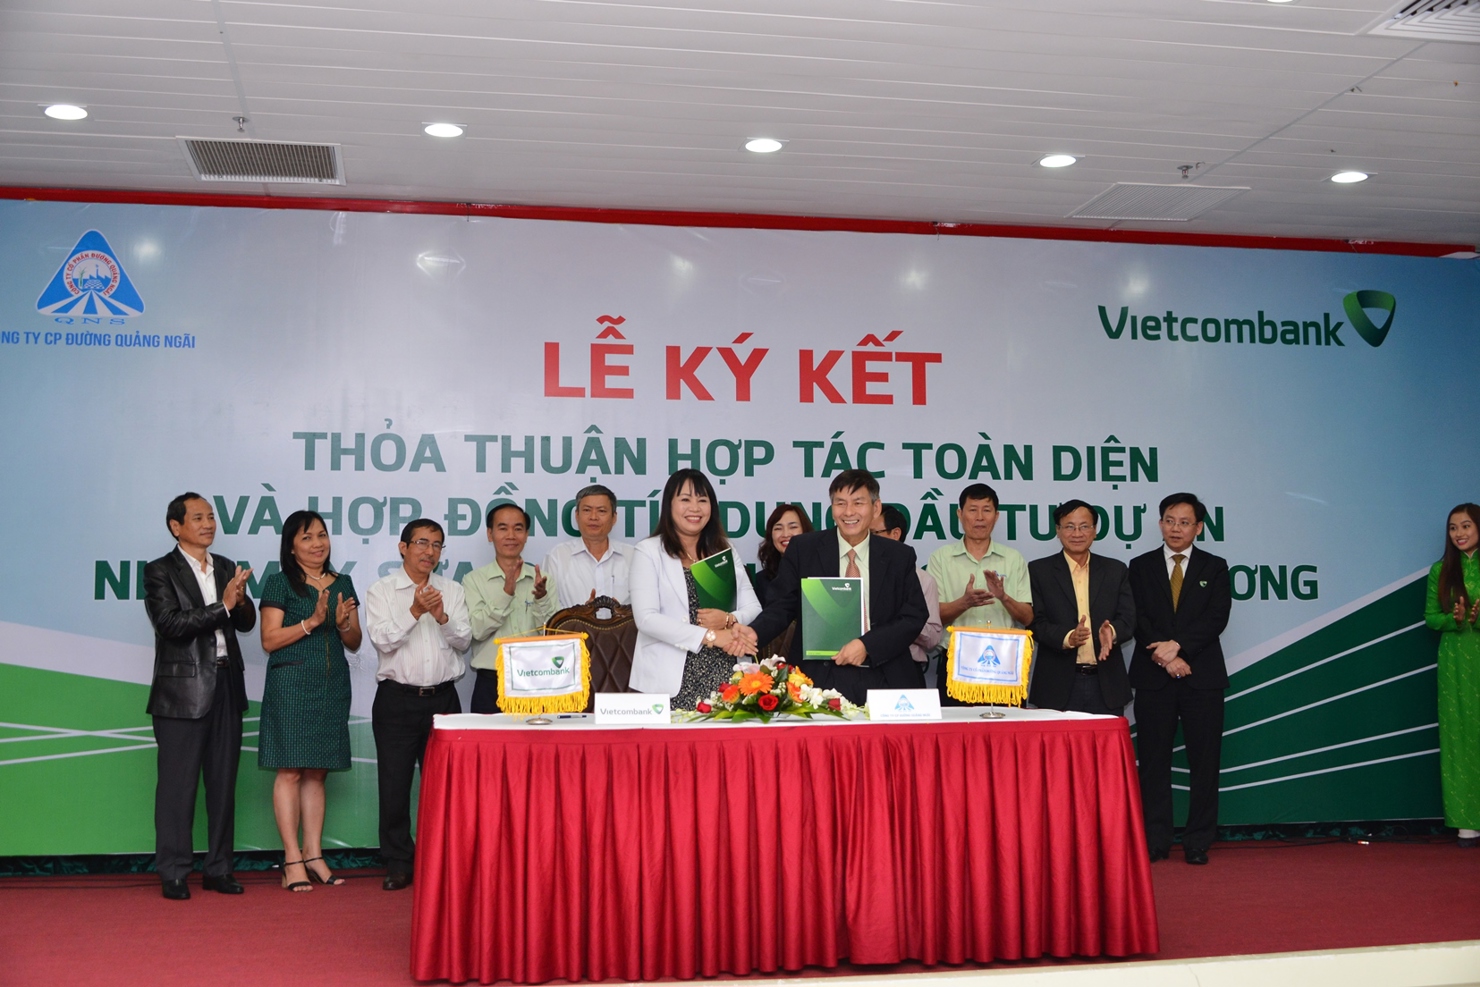 Đại diện Vietcombank, Bà Phạm Thị Thúy Kiều - Giám đốc Vietcombank Quảng Ngãi và đại diện QNS, ông Võ Thành Đàng - Chủ tịch HĐQT kiêm Tổng giám đốc QNS ký kết hợp đồng tín dụng đầu tư cho dự án Nhà máy Sữa đậu nành Vinasoy Bình Dương.